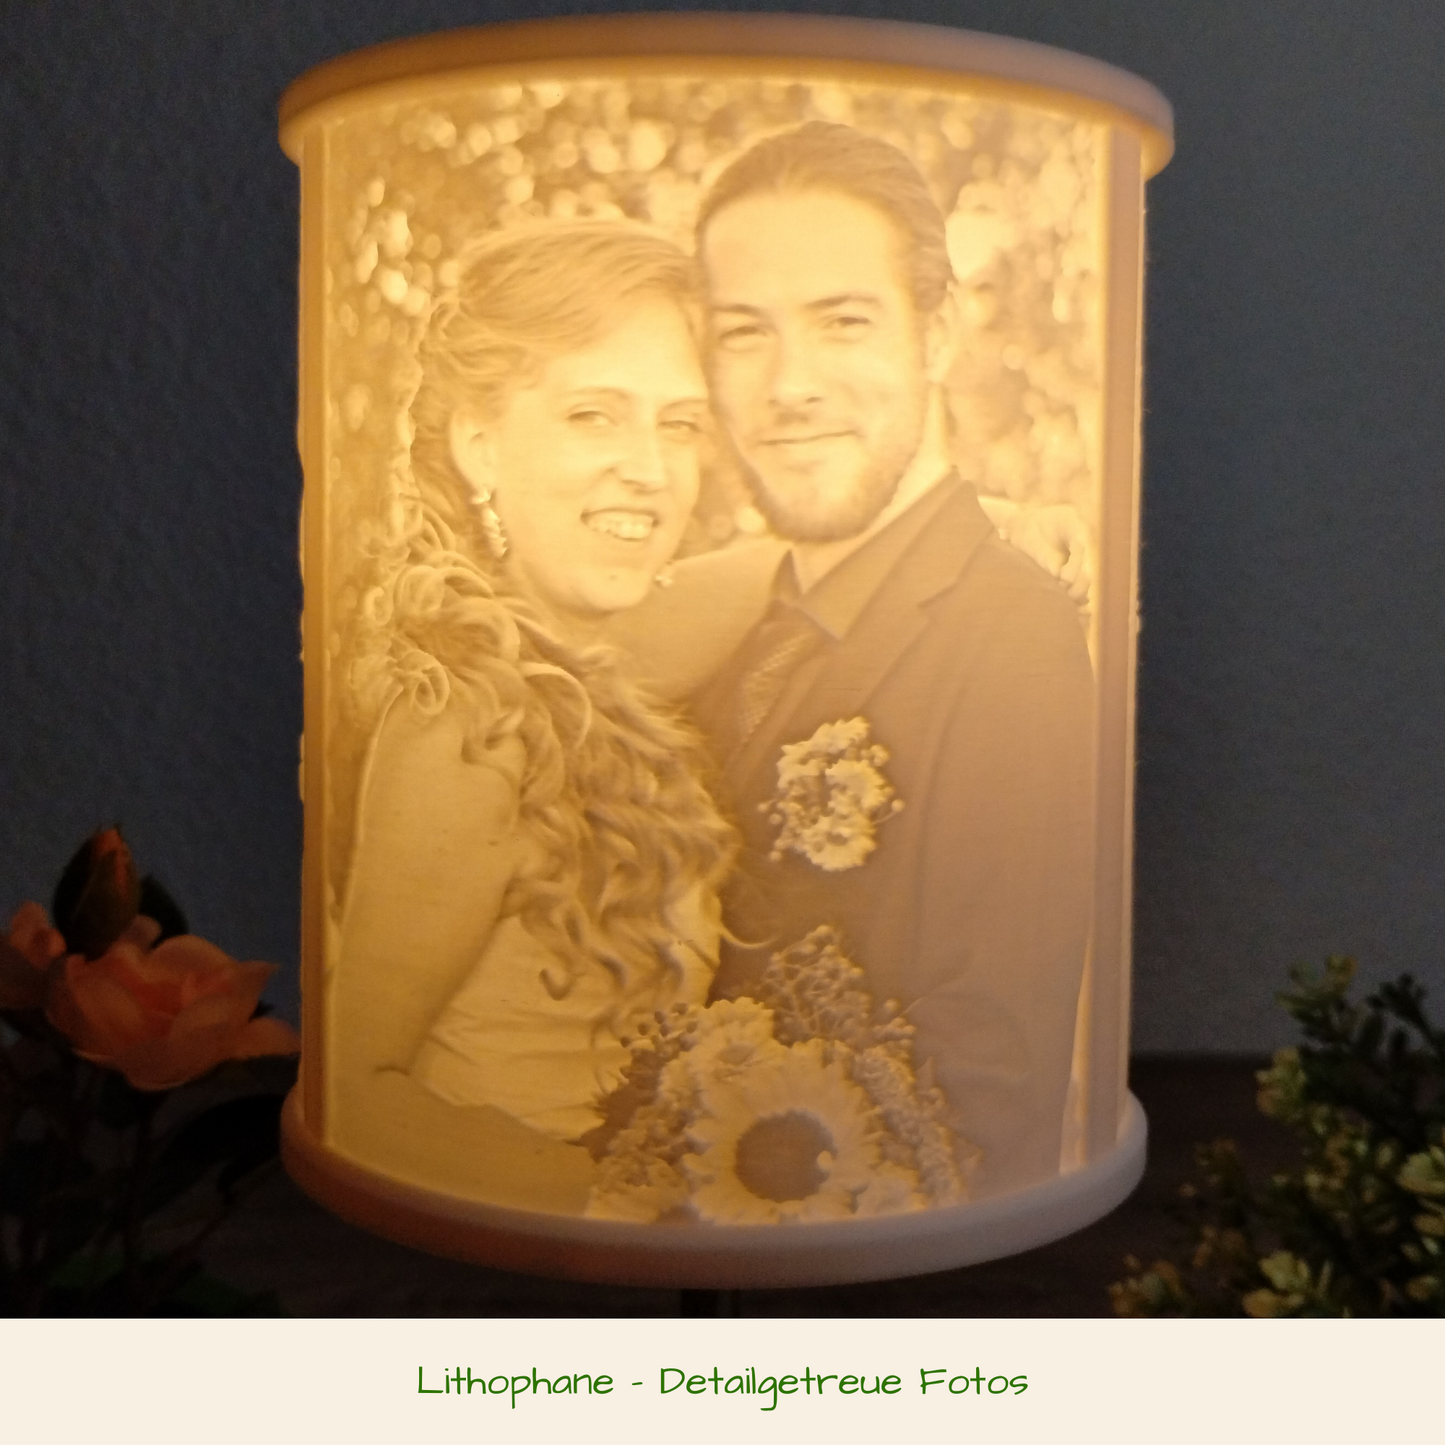 Deine persönlichen Fotos auf einer Lithophane (Fotoleuchte) - 3D gedruckt und optional mit Leuchte - Schönes Erinnerungsstück